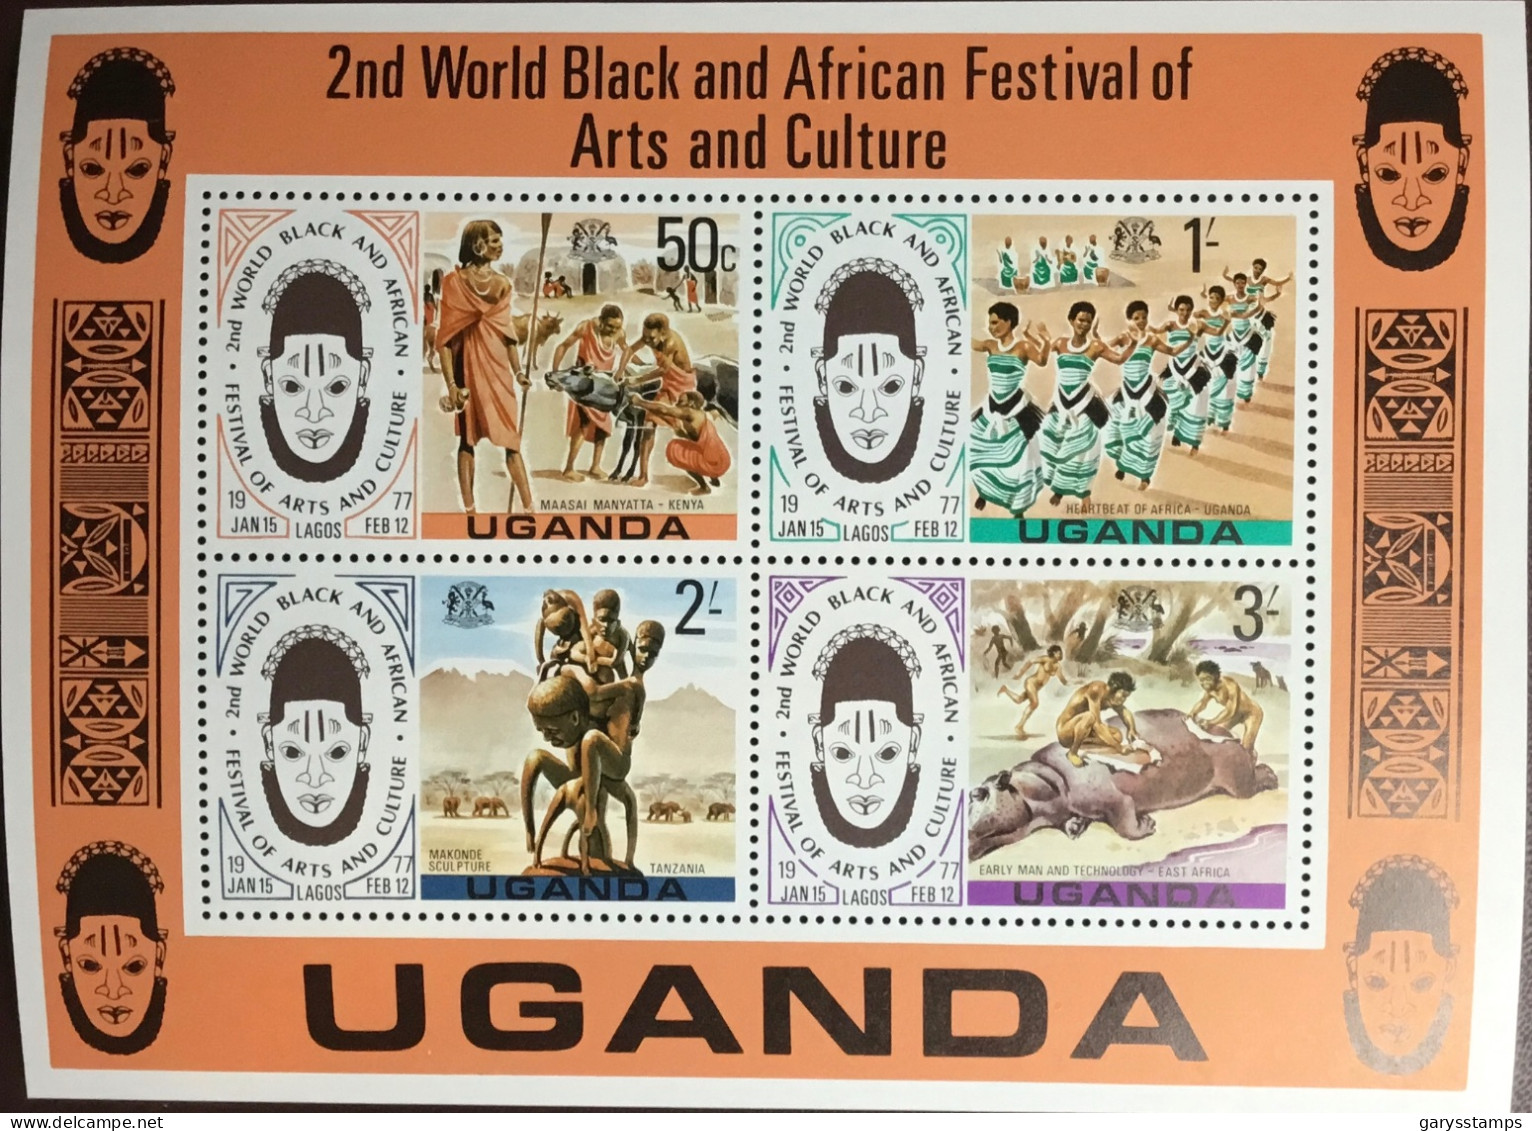 Uganda 1977 Black Arts Festival Minisheet MNH - Uganda (1962-...)